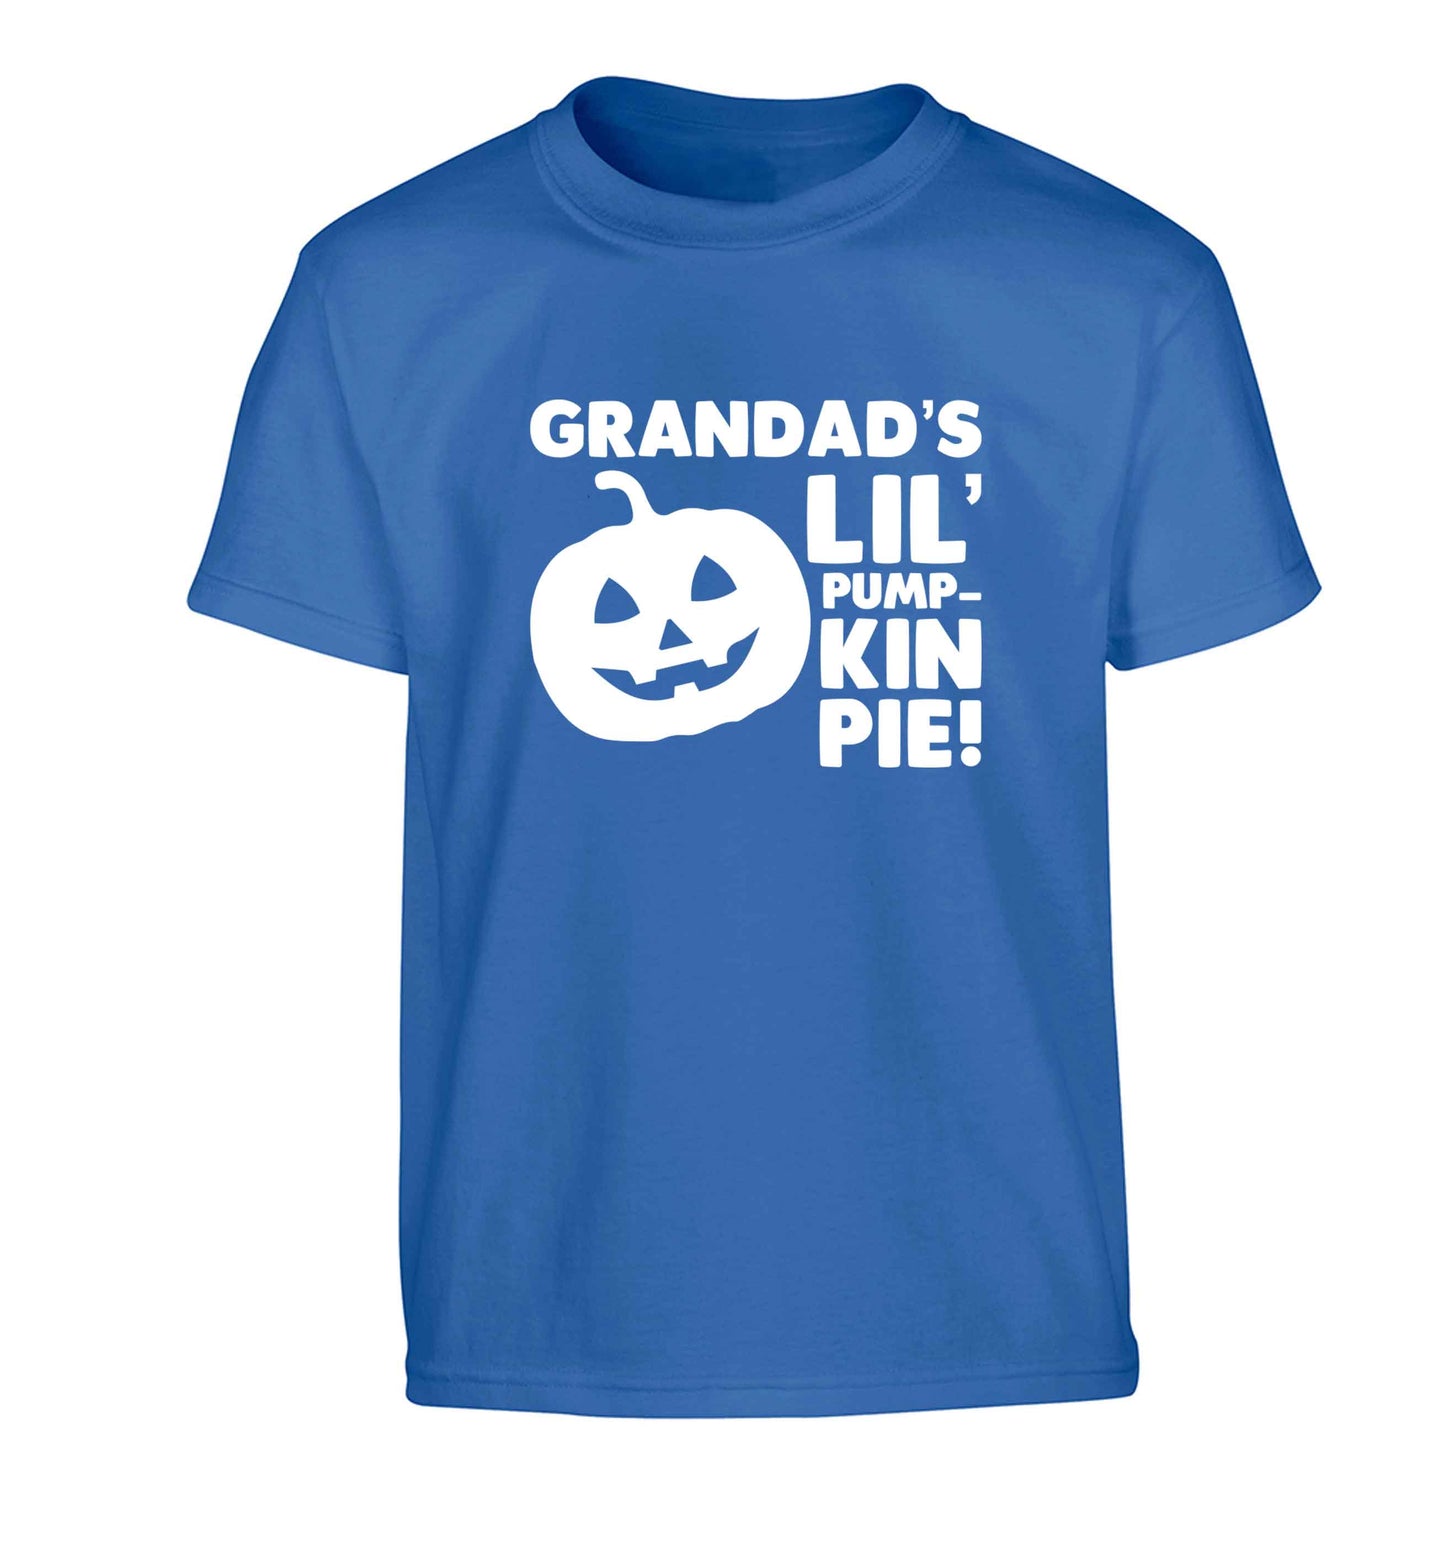 Grandad's lil' pumpkin pie Children's blue Tshirt 12-13 Years